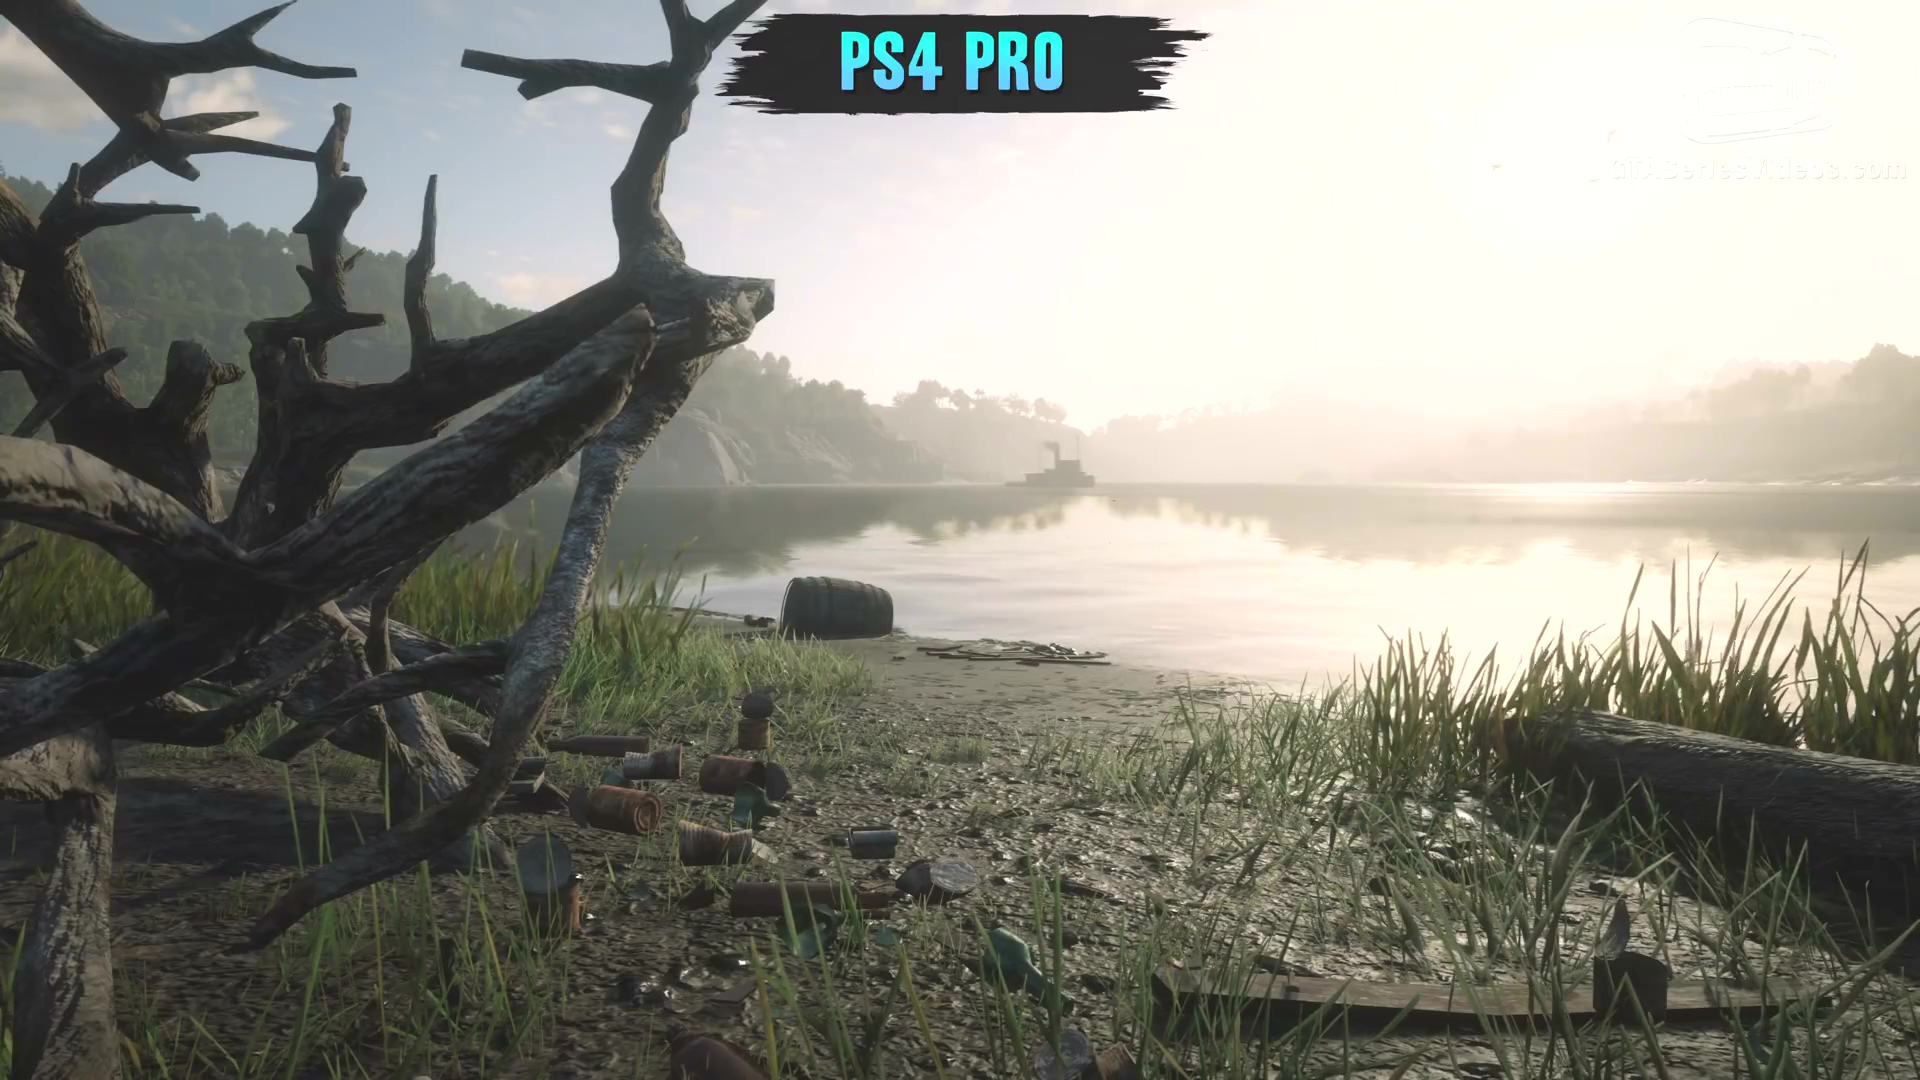 Ұڿ2ԱȣPC vs X1X vs PS4 Pro